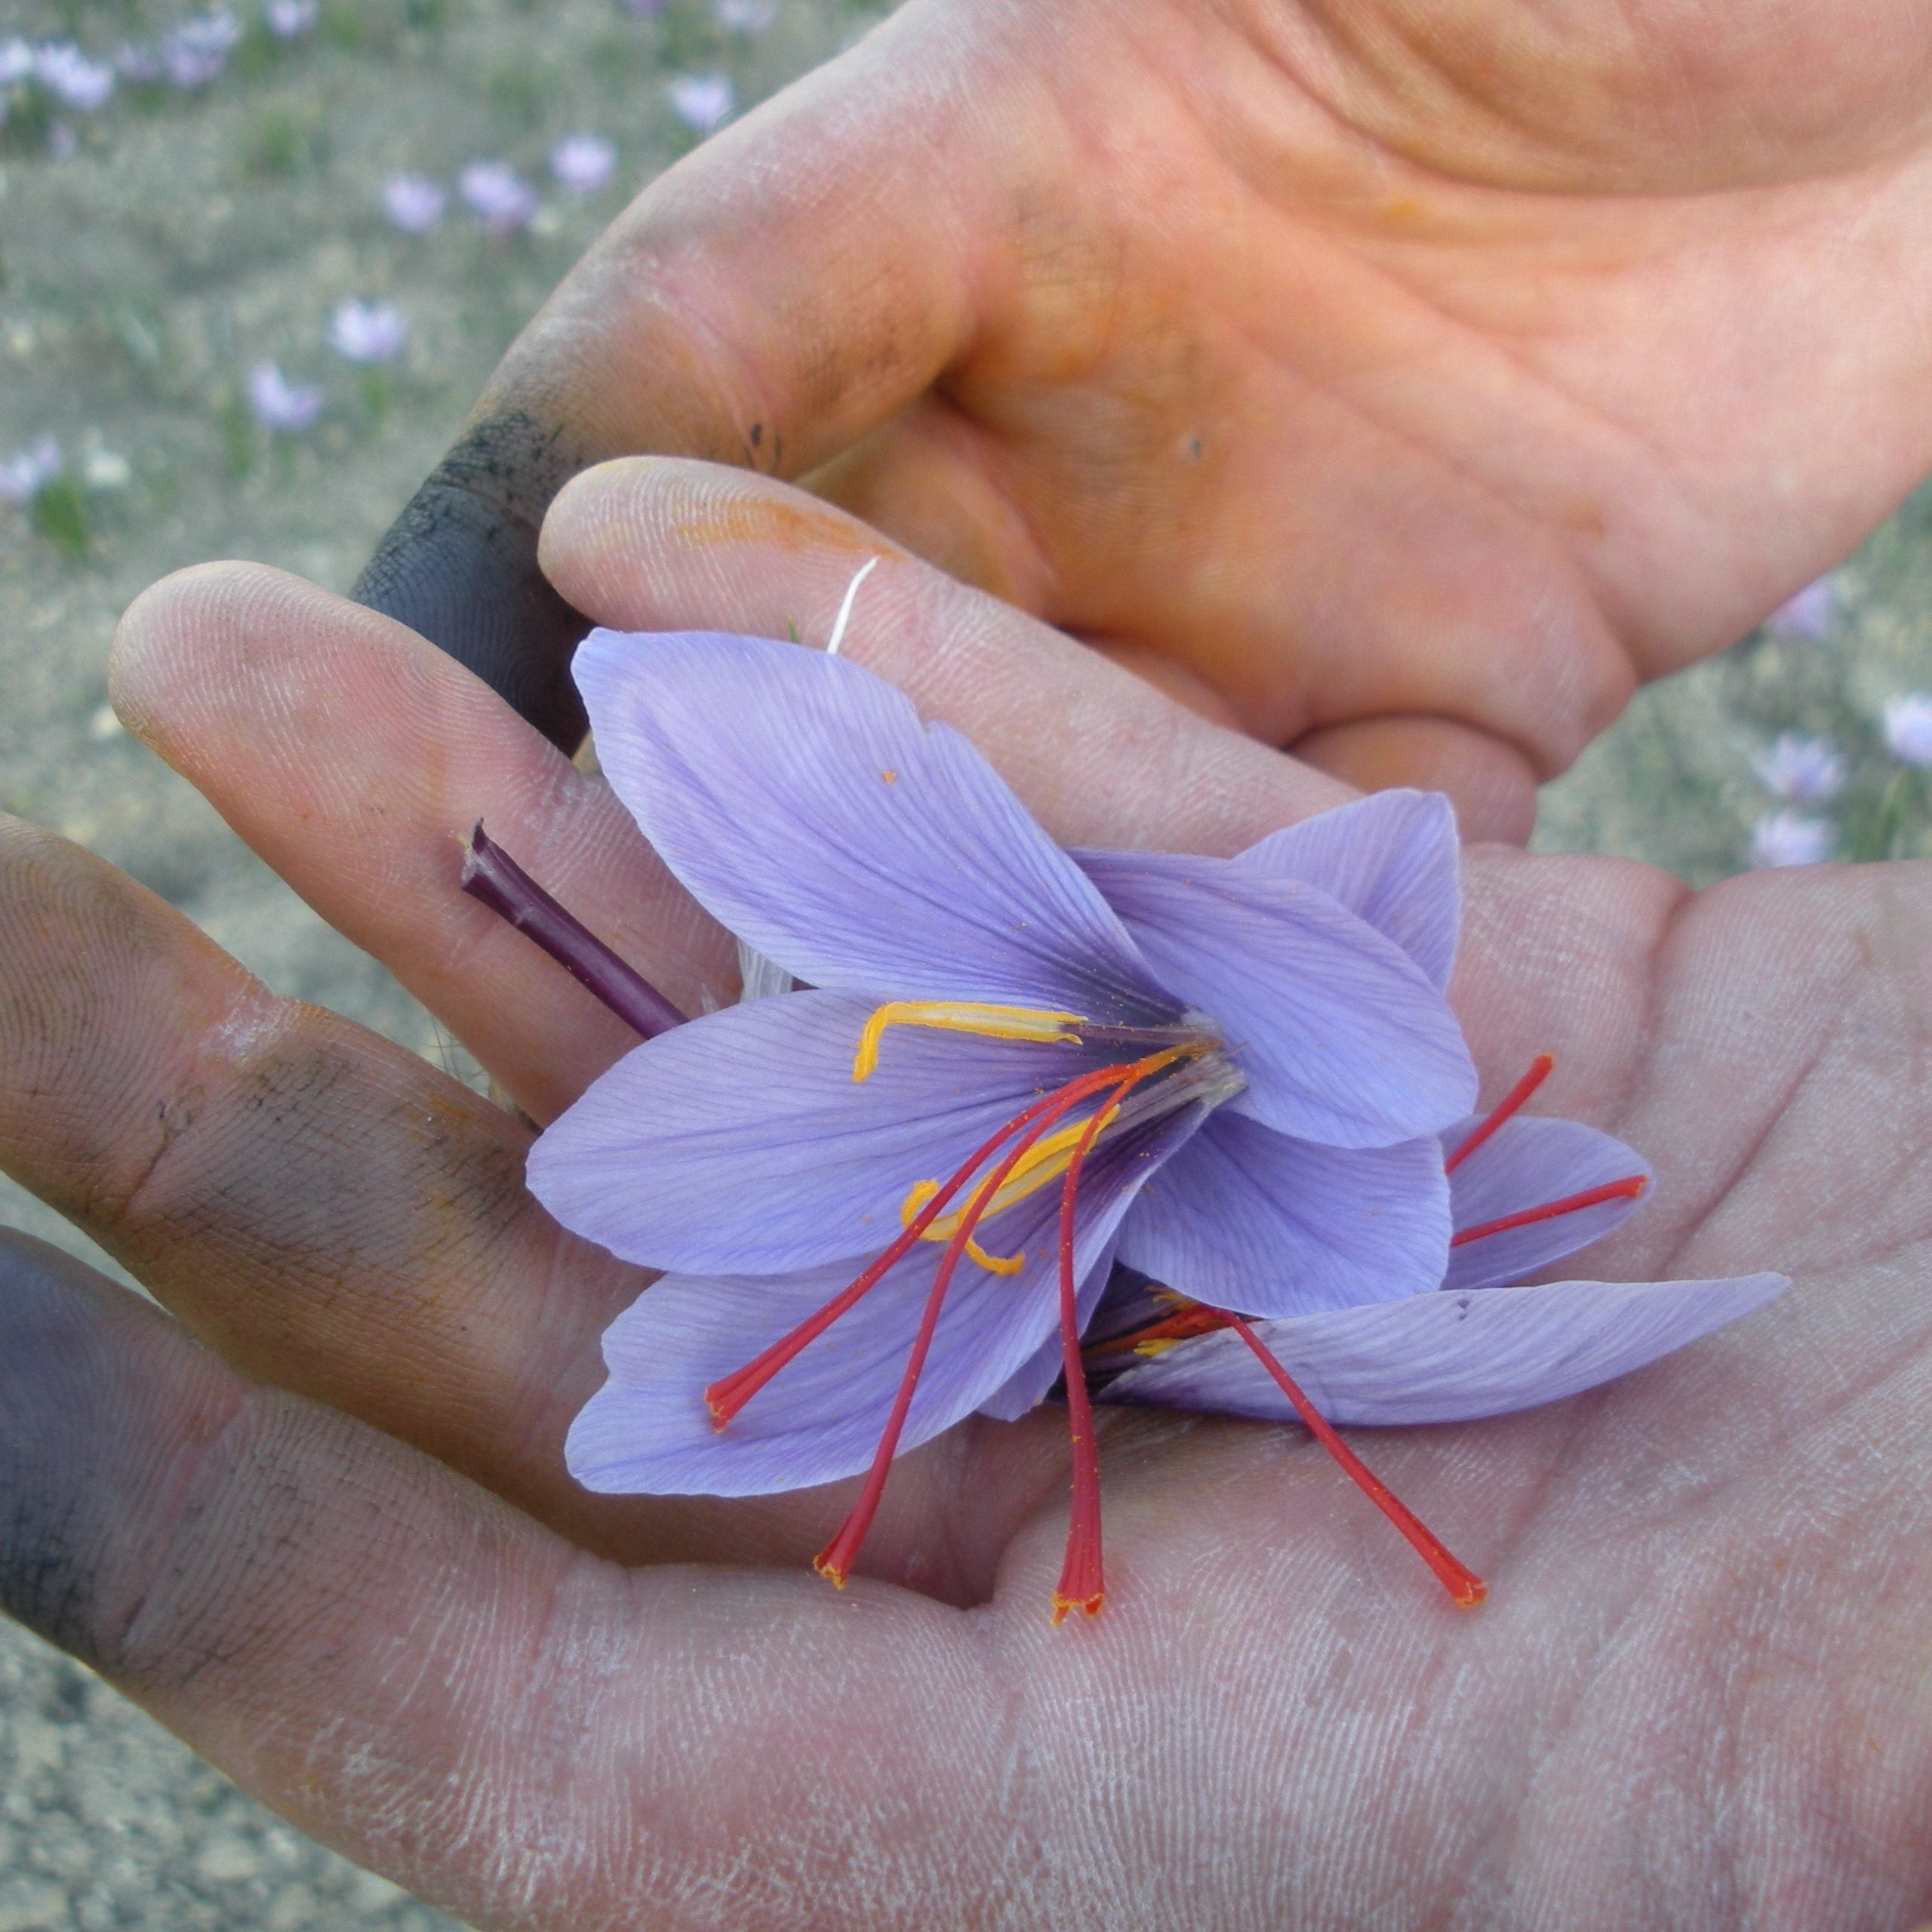 Hands holding a just-harvested saffron flower